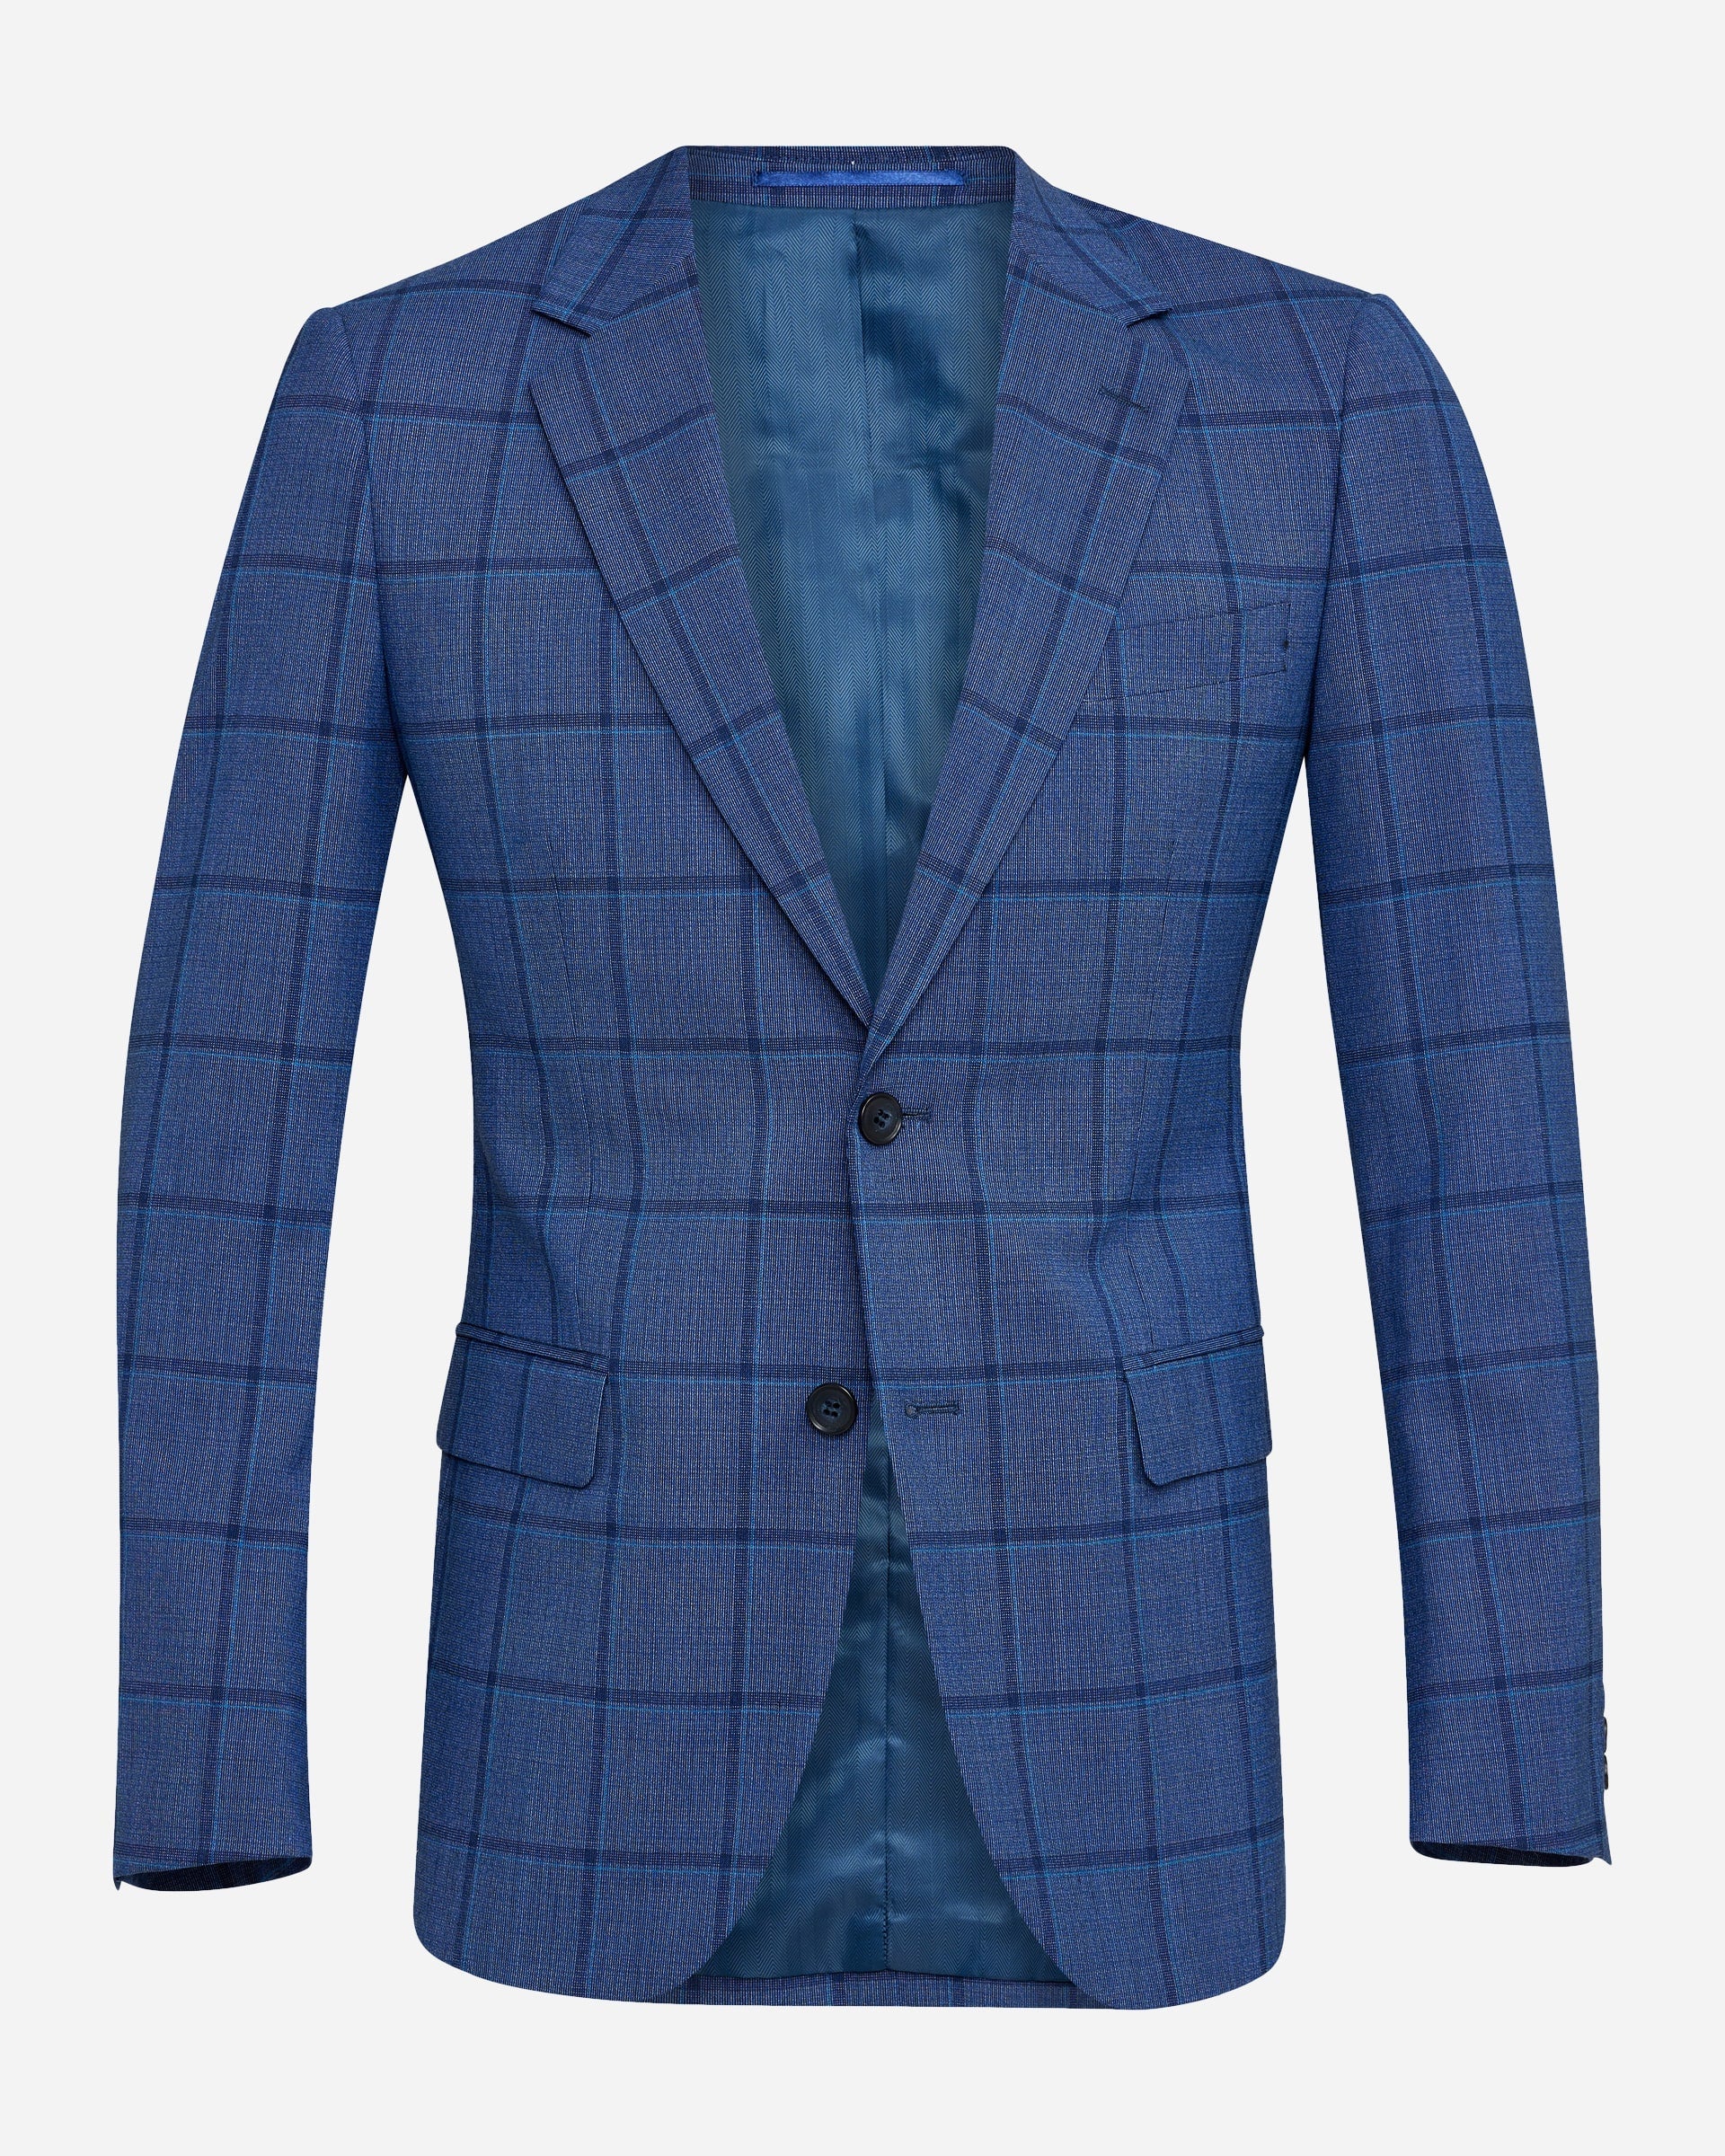 Daly Blue Suit - Men's Suits Melbourne at Menzclub